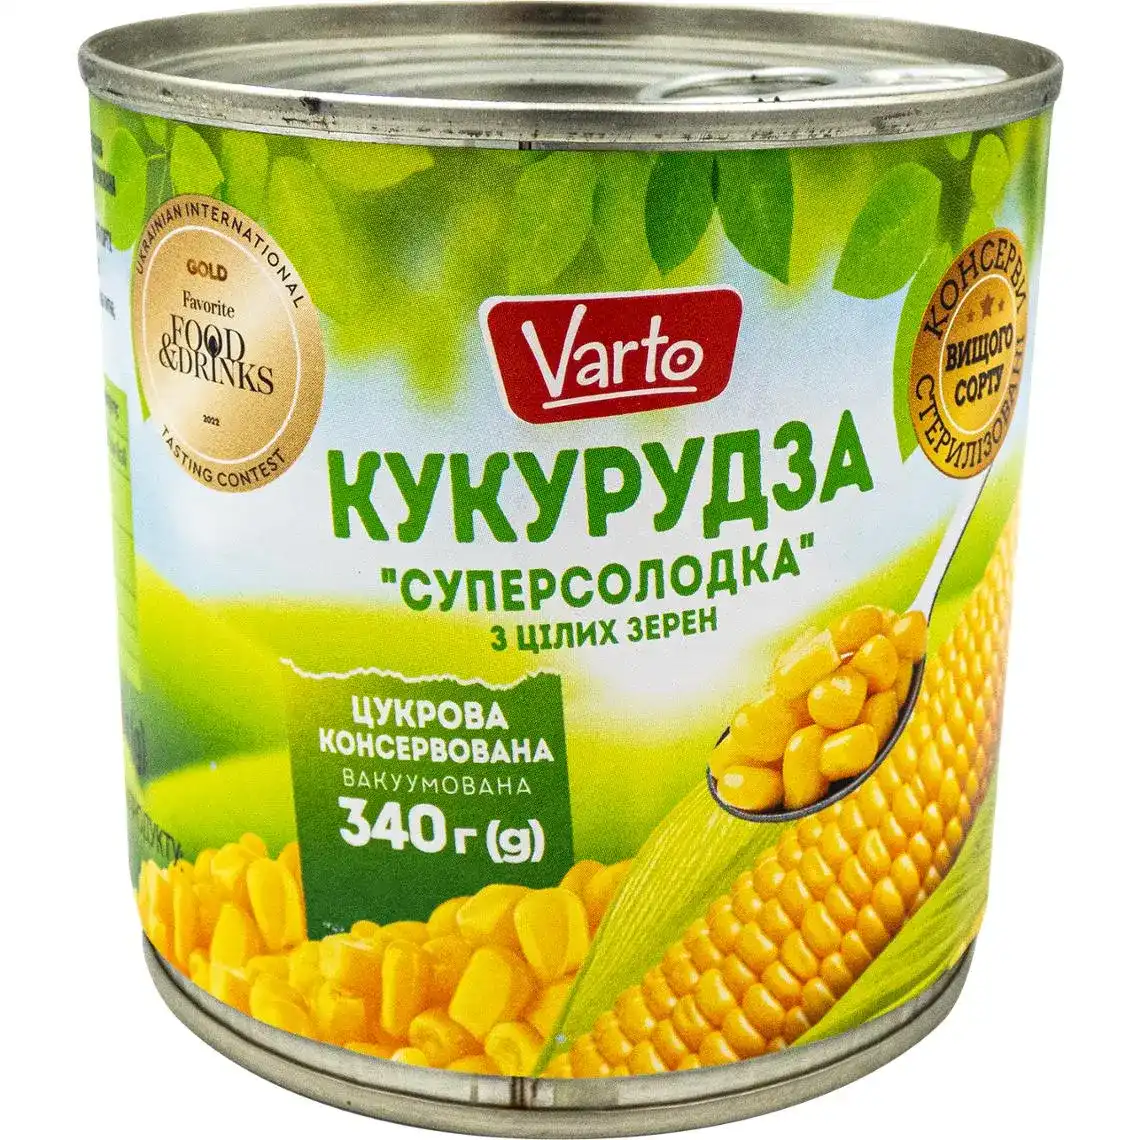 Кукурудза Varto цукрова консервована 340 г